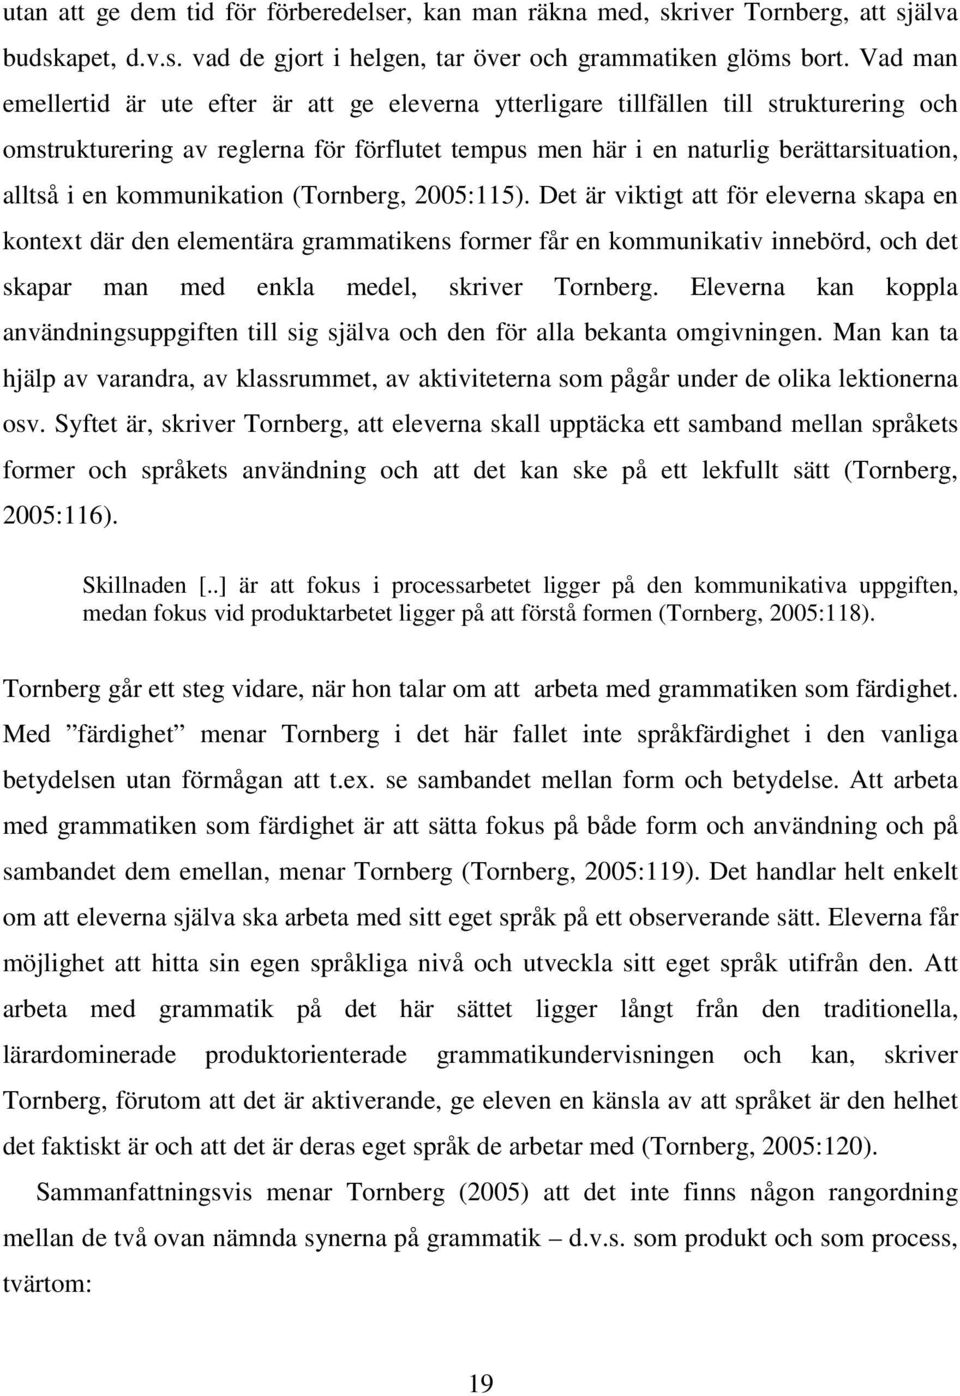 kommunikation (Tornberg, 2005:115).